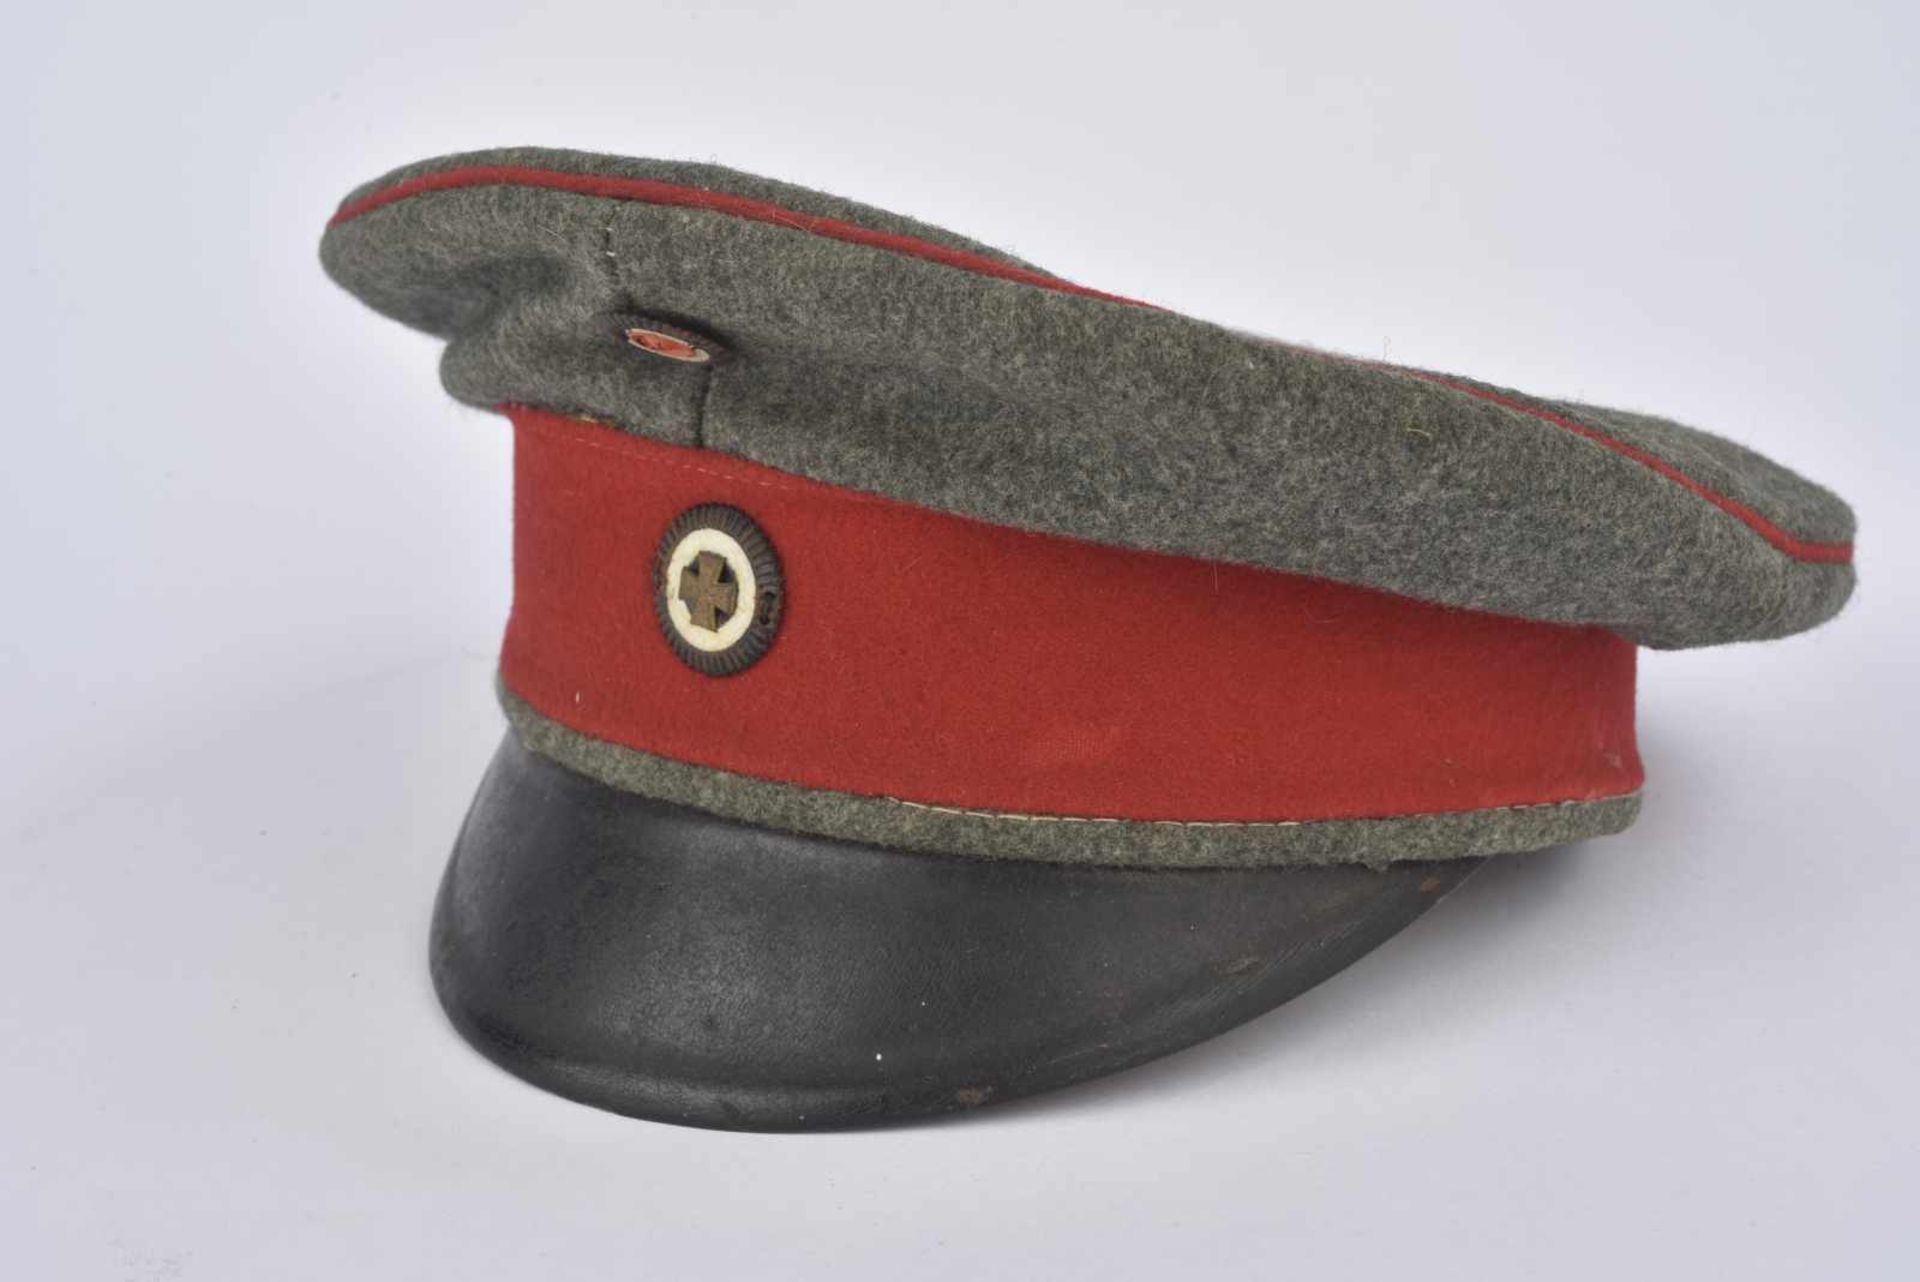 Casquette Schirmmütze de réserviste felgrau bandeau rouge, cocarde à la croix de fer. Etat II